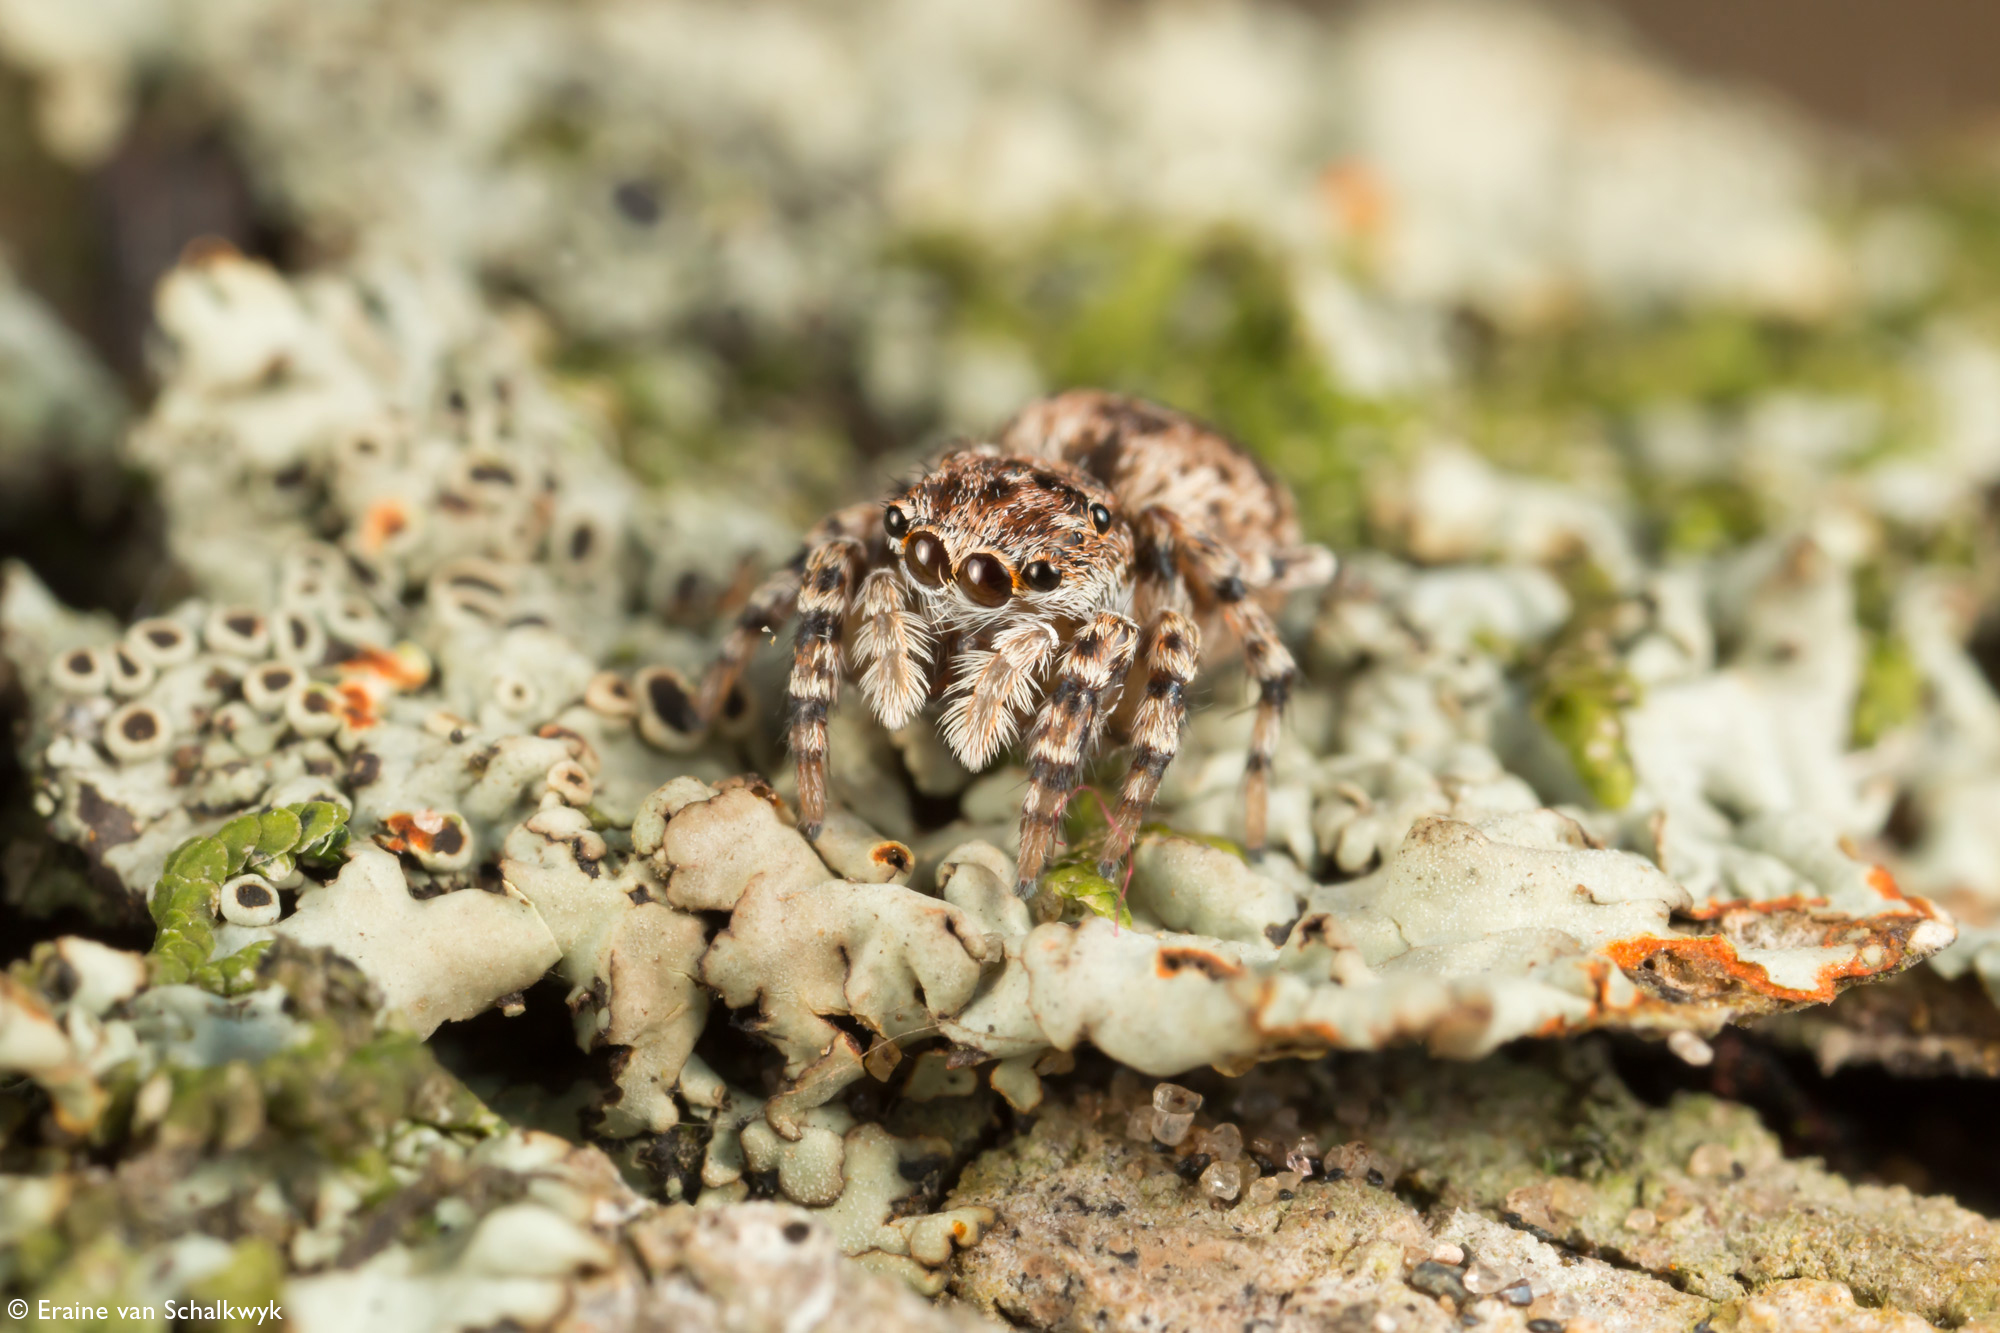 Jumping spider on lichen, spider, arachnid, macro photography